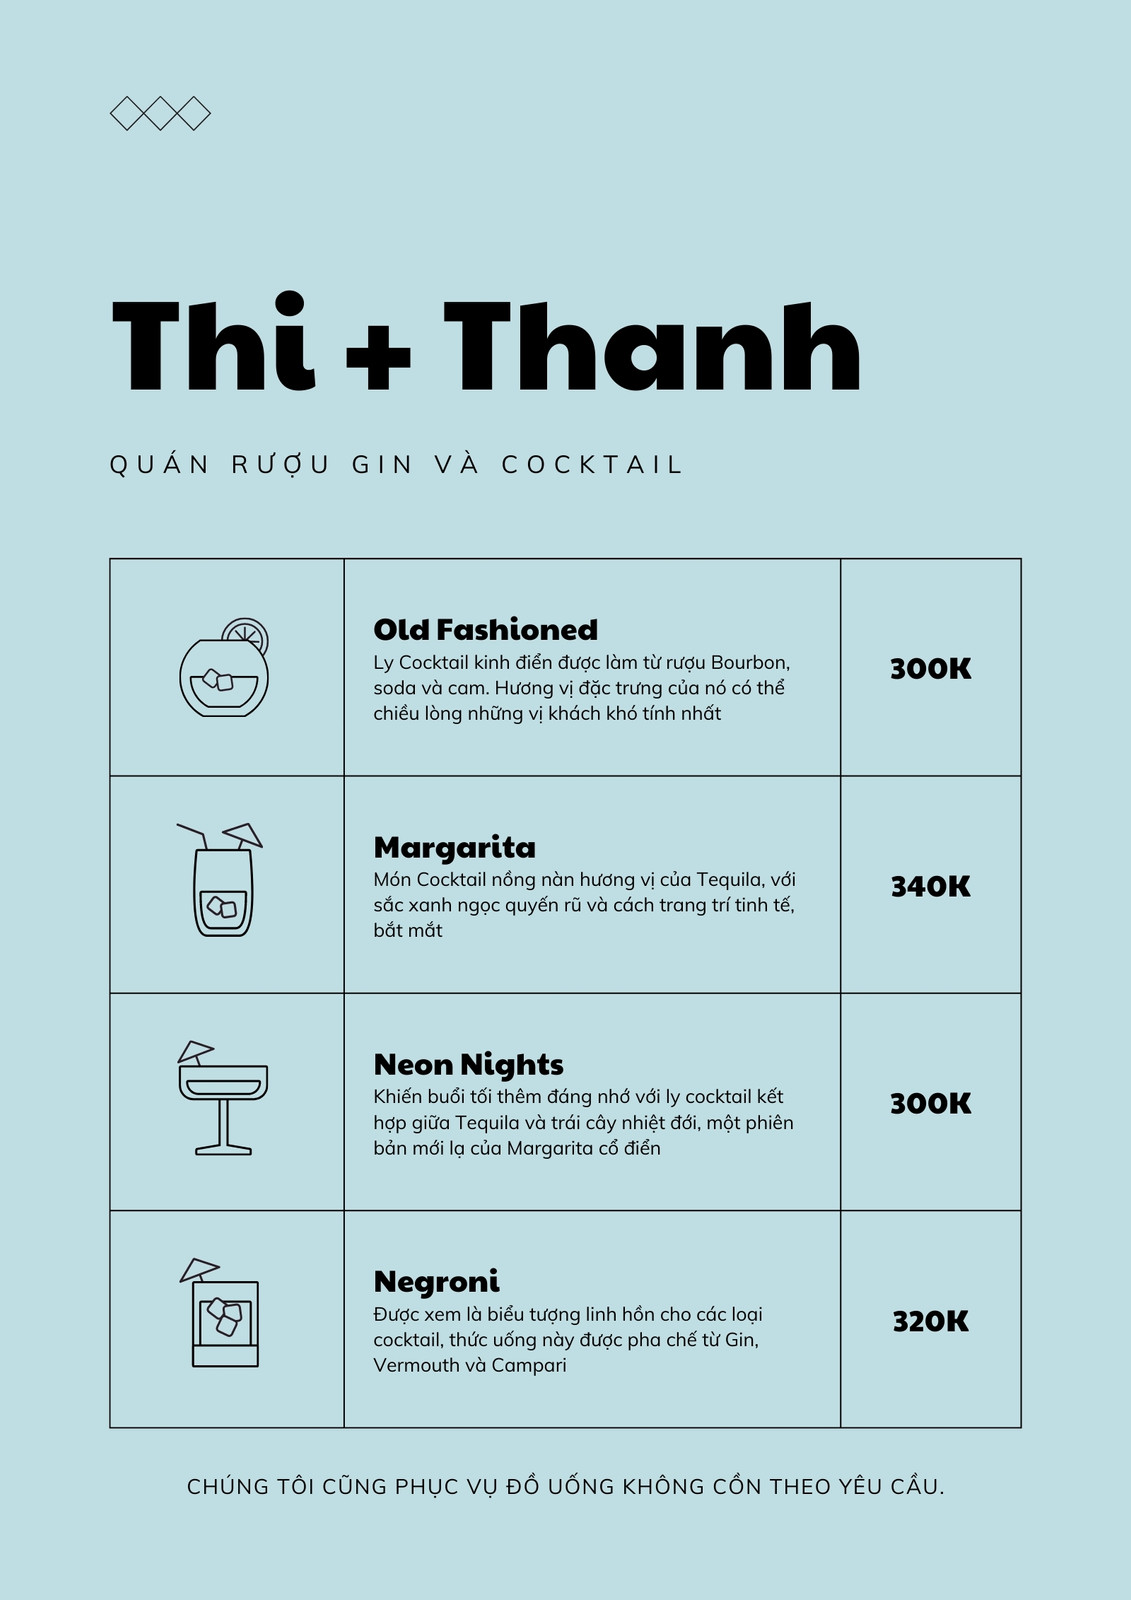 Menu cocktail có đủ các loại thức uống từ nổi tiếng nhất đến những thức uống độc đáo mà bạn chưa từng thử trước đây. Với các công thức đặc biệt và cách trình bày độc đáo, chắc chắn bạn sẽ tìm thấy một loại cocktail ưng ý và phù hợp với sở thích của mình. Hãy tham khảo hình ảnh để lựa chọn menu cocktail phù hợp cho bạn.